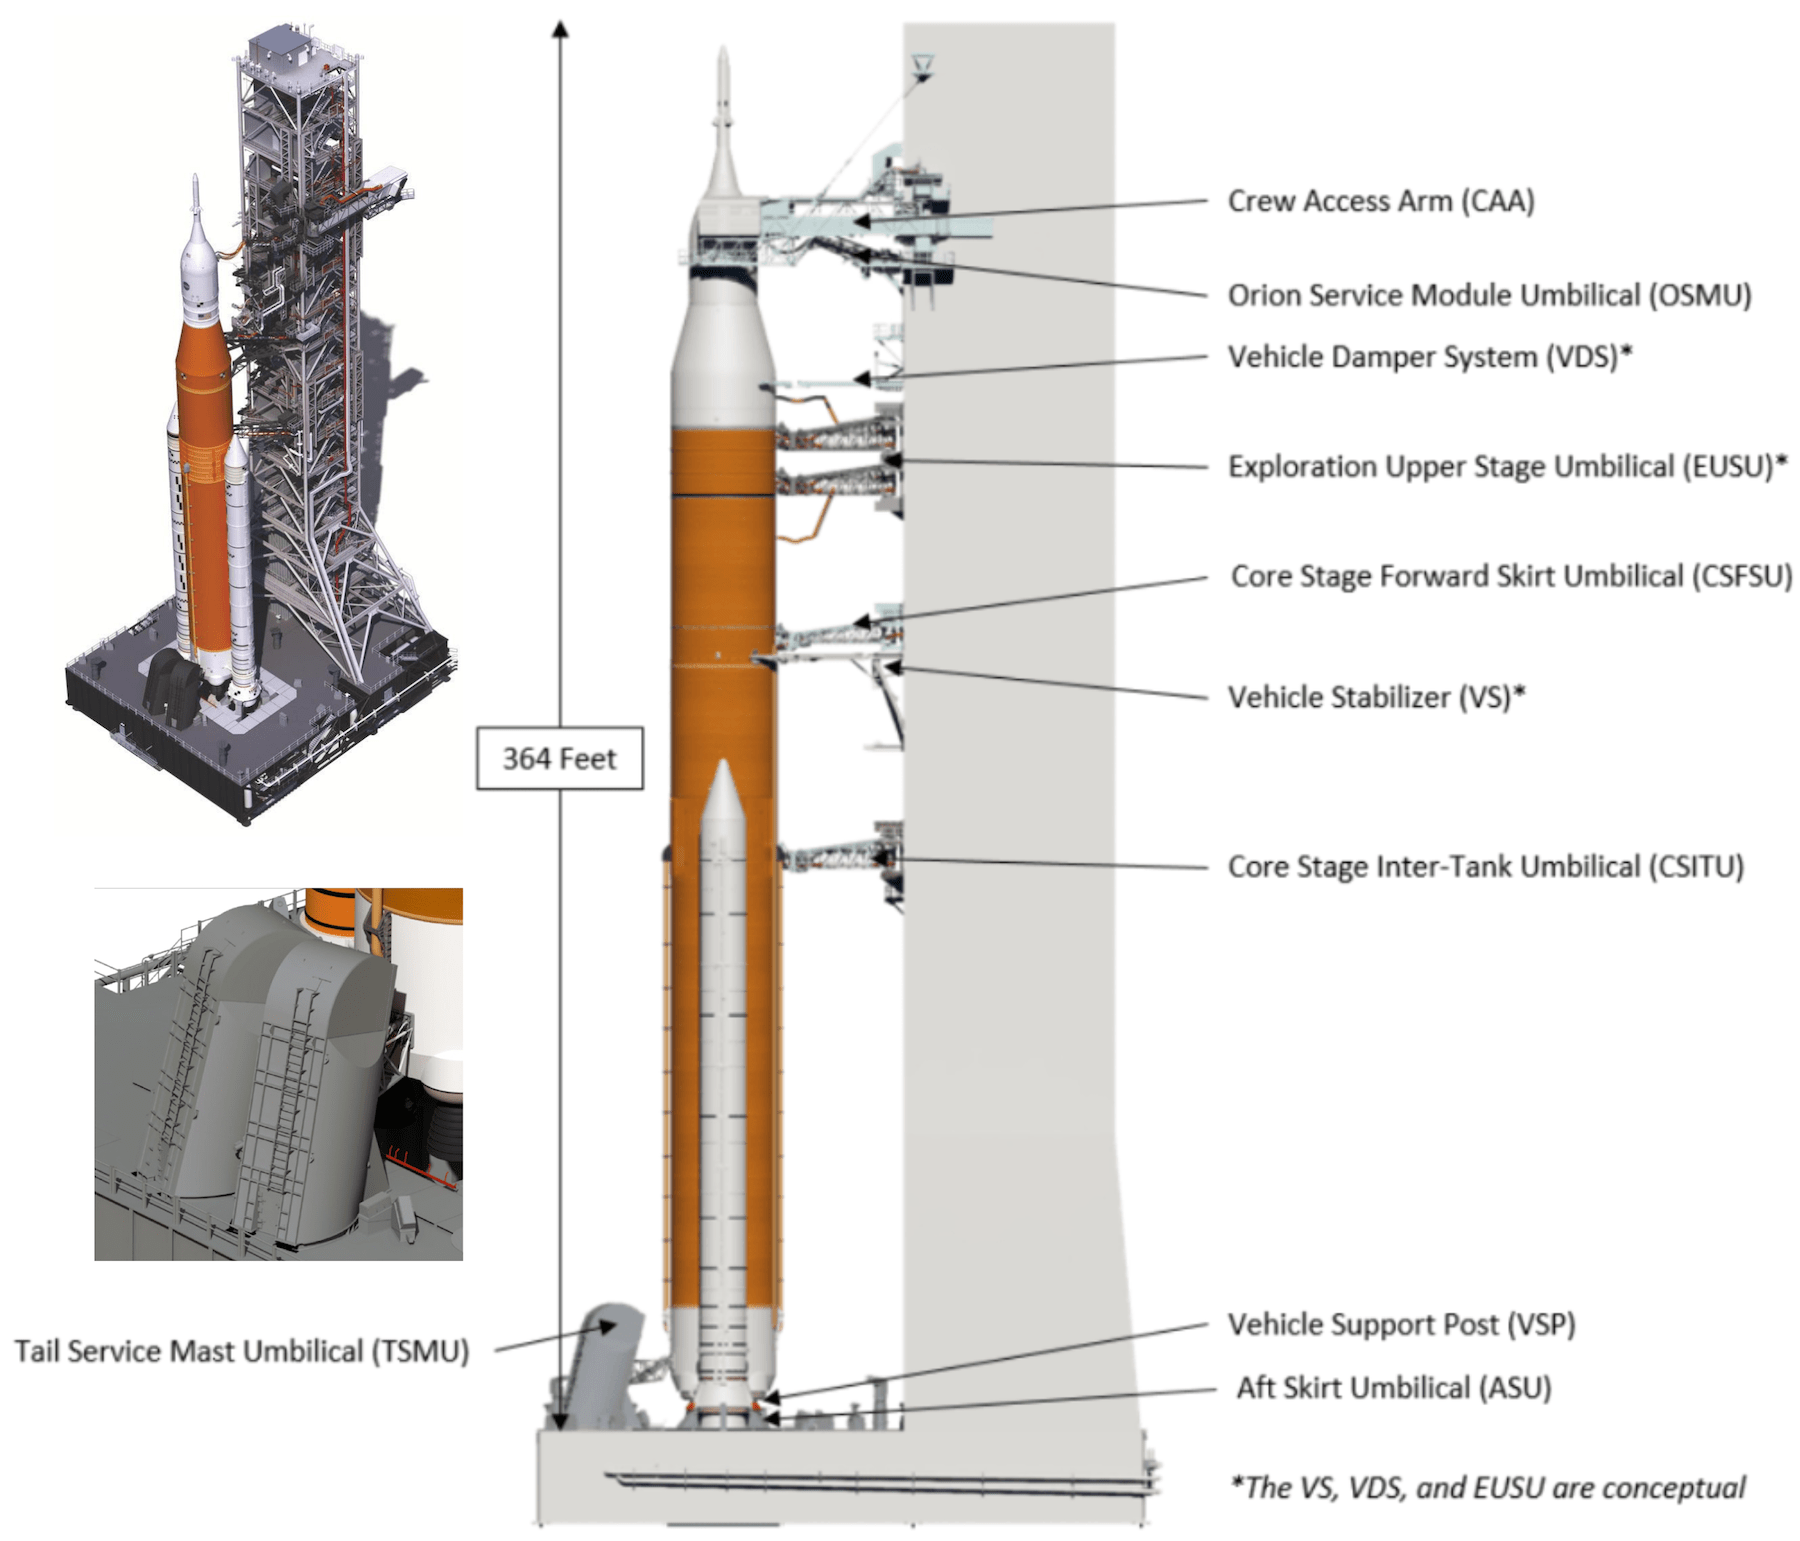 A sinistra, i due Tail Service Mast Umbilicals (TSMU) che contengono linee di propellente per il primo stadio dell'SLS e collegamenti elettrici. Qui è stato trovato il problema durante il test WDR. A destra, un elenco di tutti i collegamenti del Mobile Launcher con il razzo SLS.